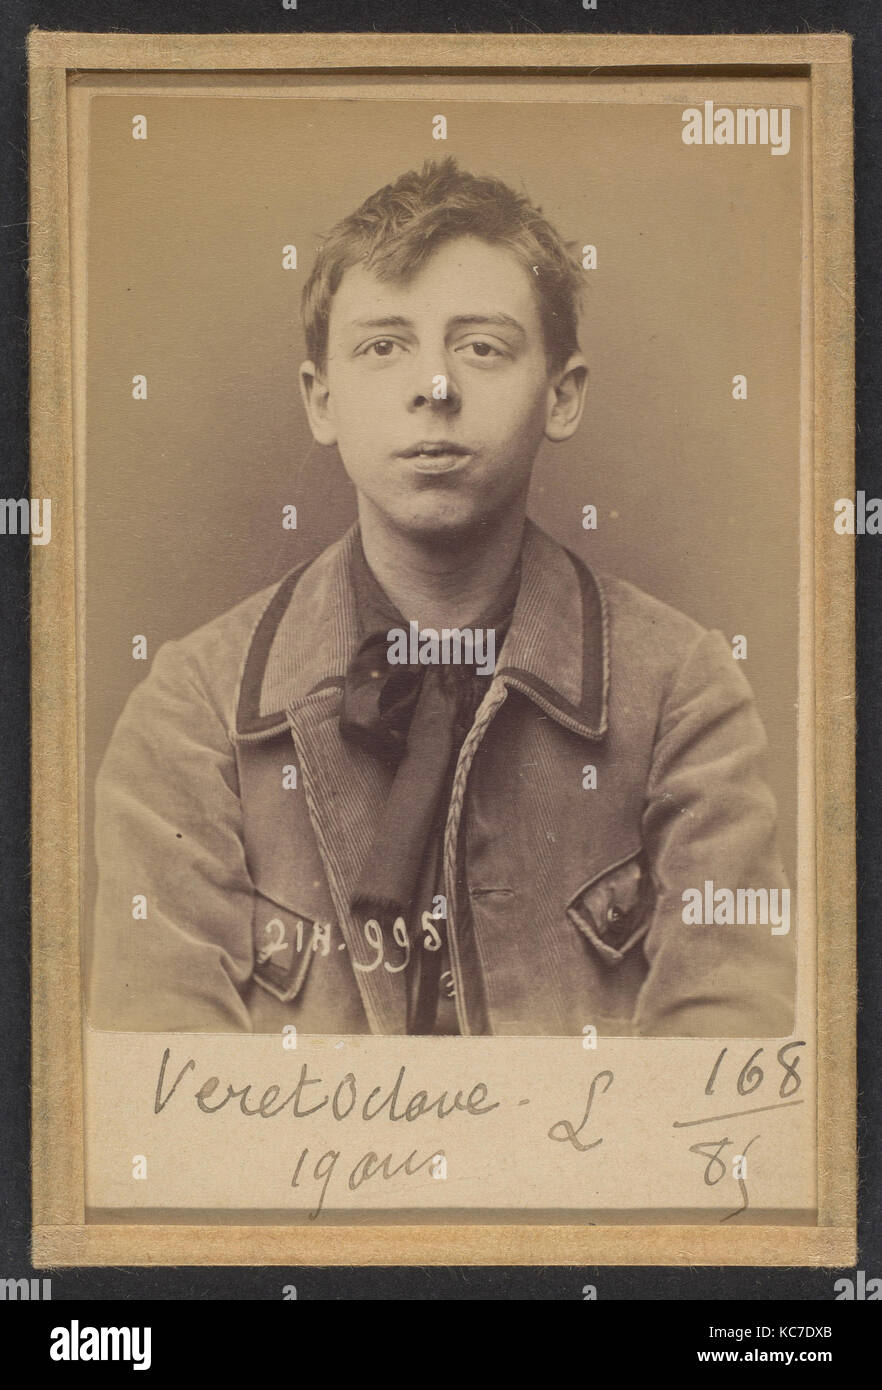 Véret. 0 ctave-Jean. 19 ans, né à Paris XXe. Photographe. Anarchiste. 2/3/94., Alphonse Bertillon, 1894 Stockfoto